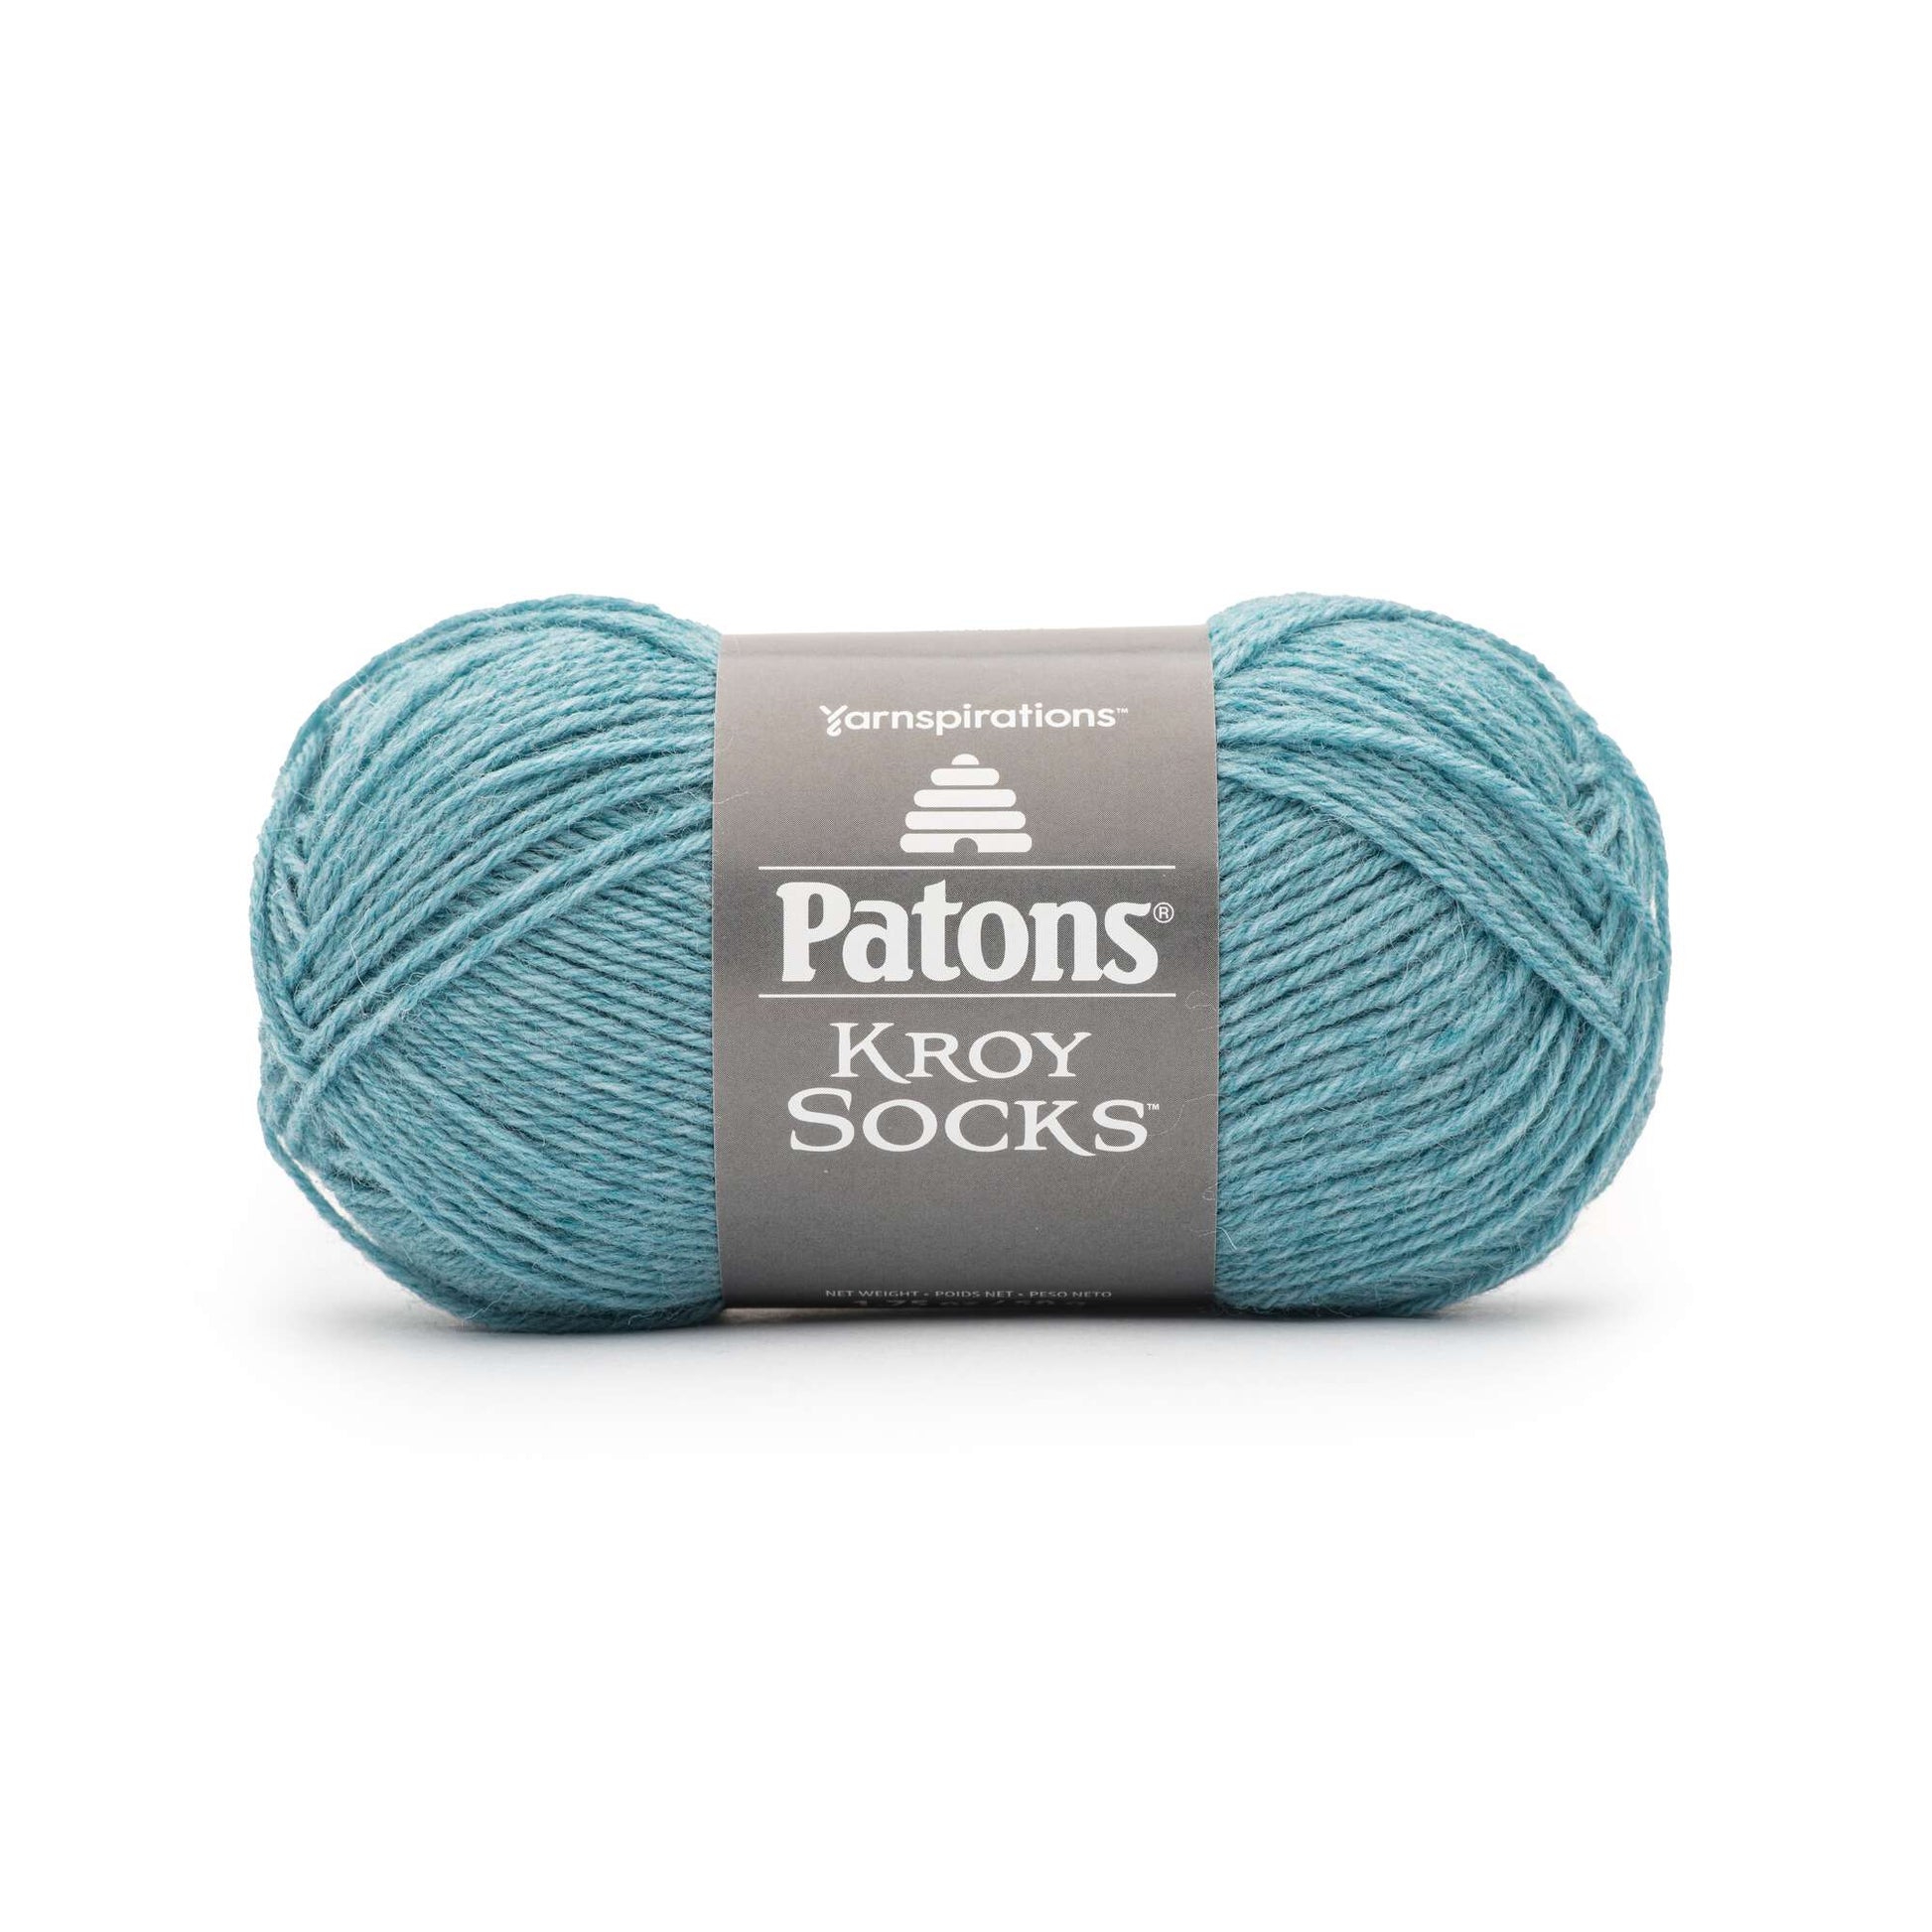 Patons Kroy Socks Yarn Salt Water